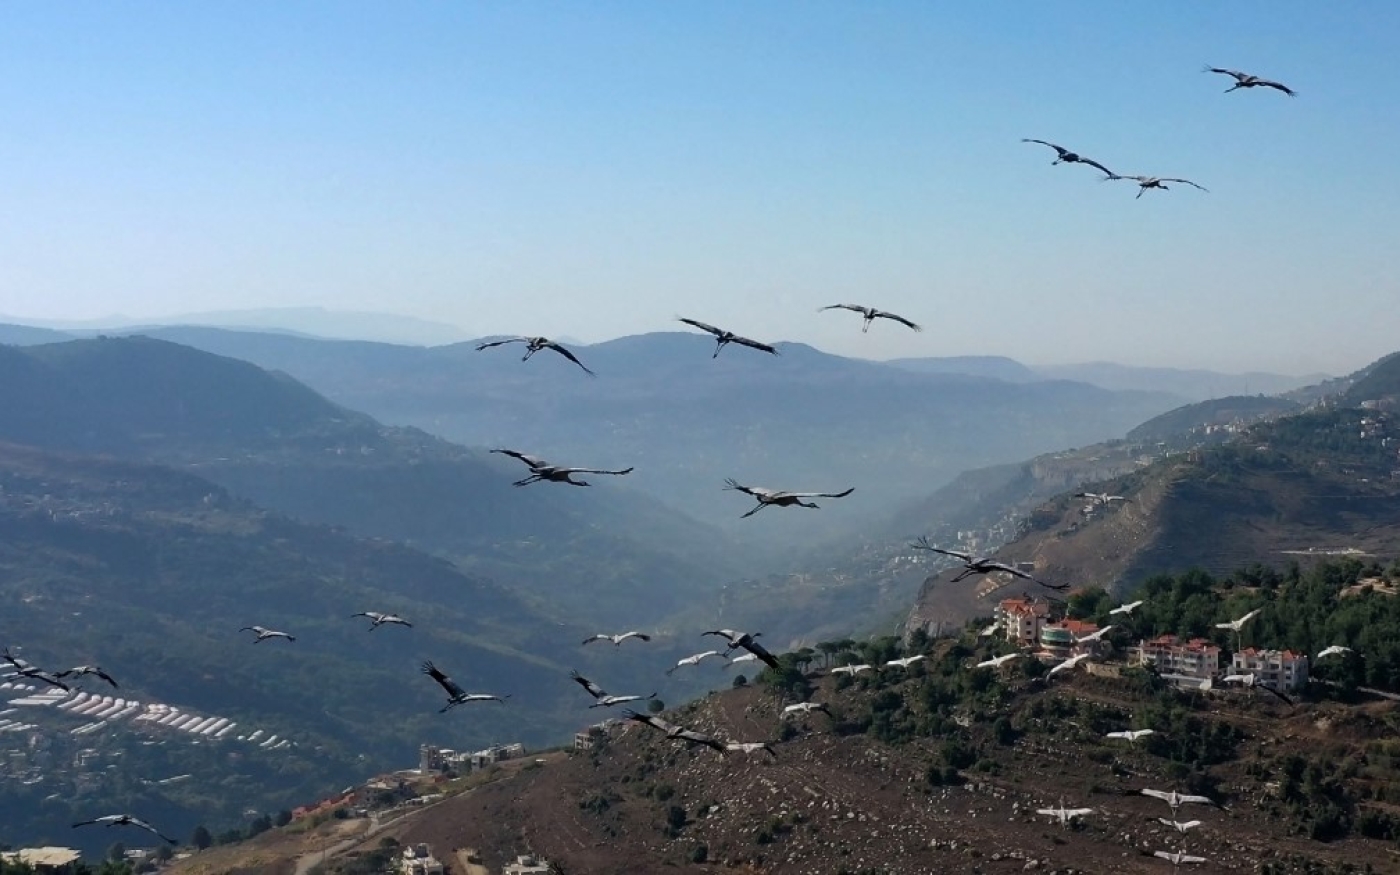 Une vue aérienne montre des grues migratrices survolant la ville libanaise d’Aley sur le mont Liban, au sud-est de la capitale Beyrouth (AFP/Kameel Rayes)